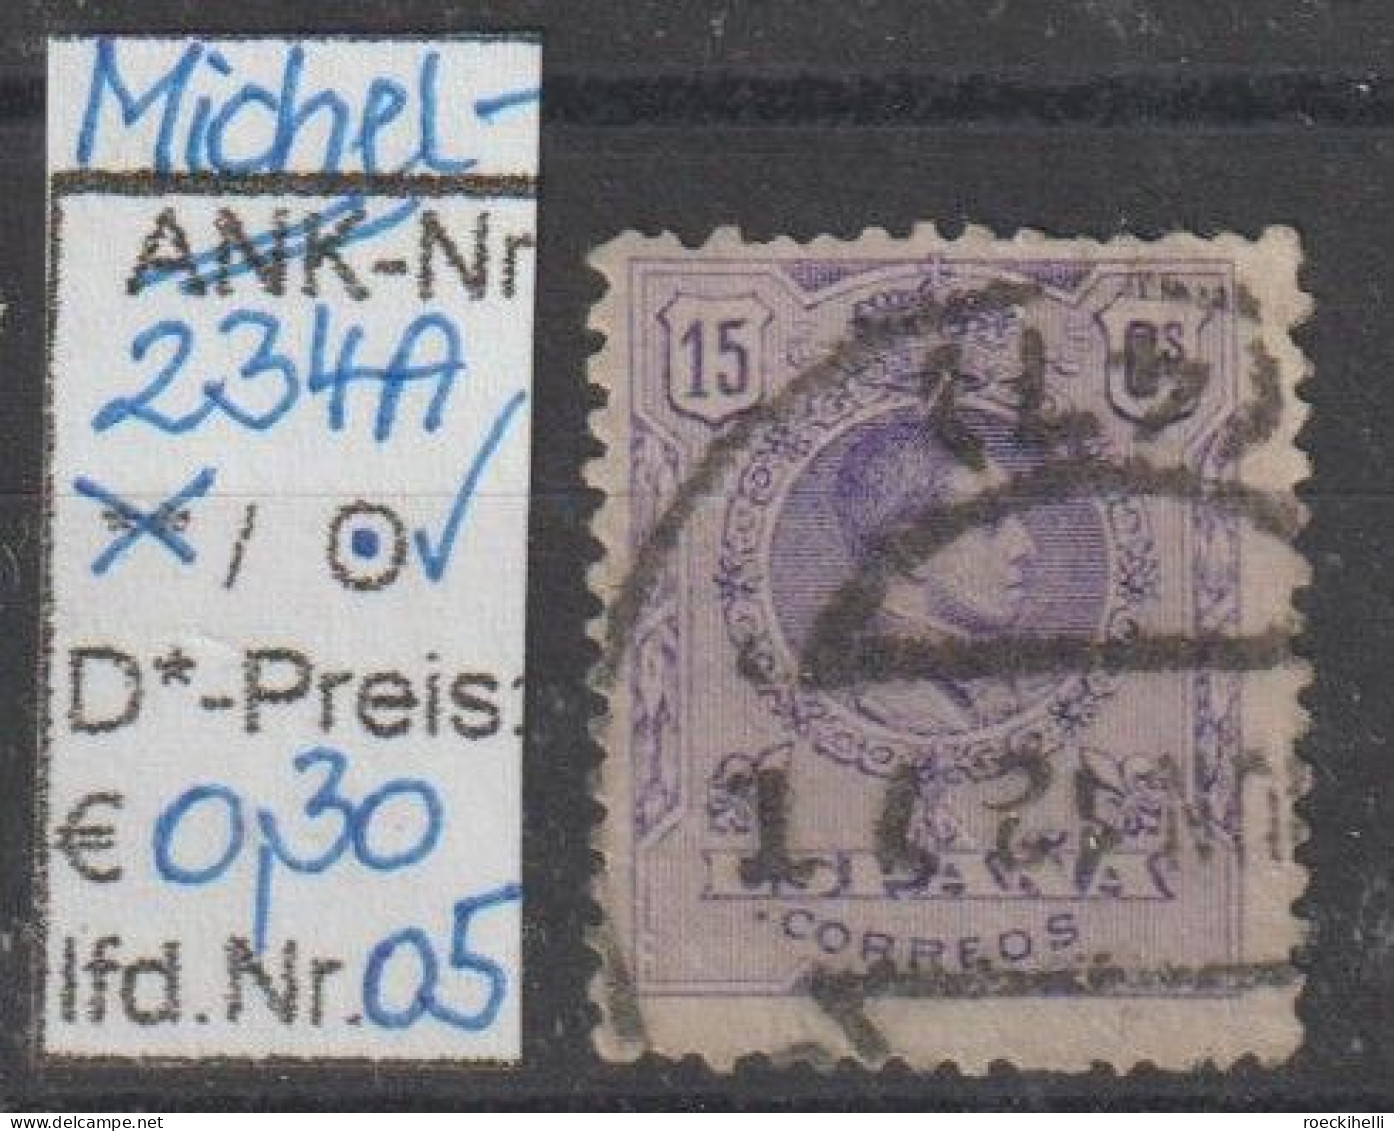 1909 - SPANIEN - FM/DM "König Alfons XIII im Medaillon" 15 C violett - o gestempelt - s.Scan (234Ao 01-05 esp)